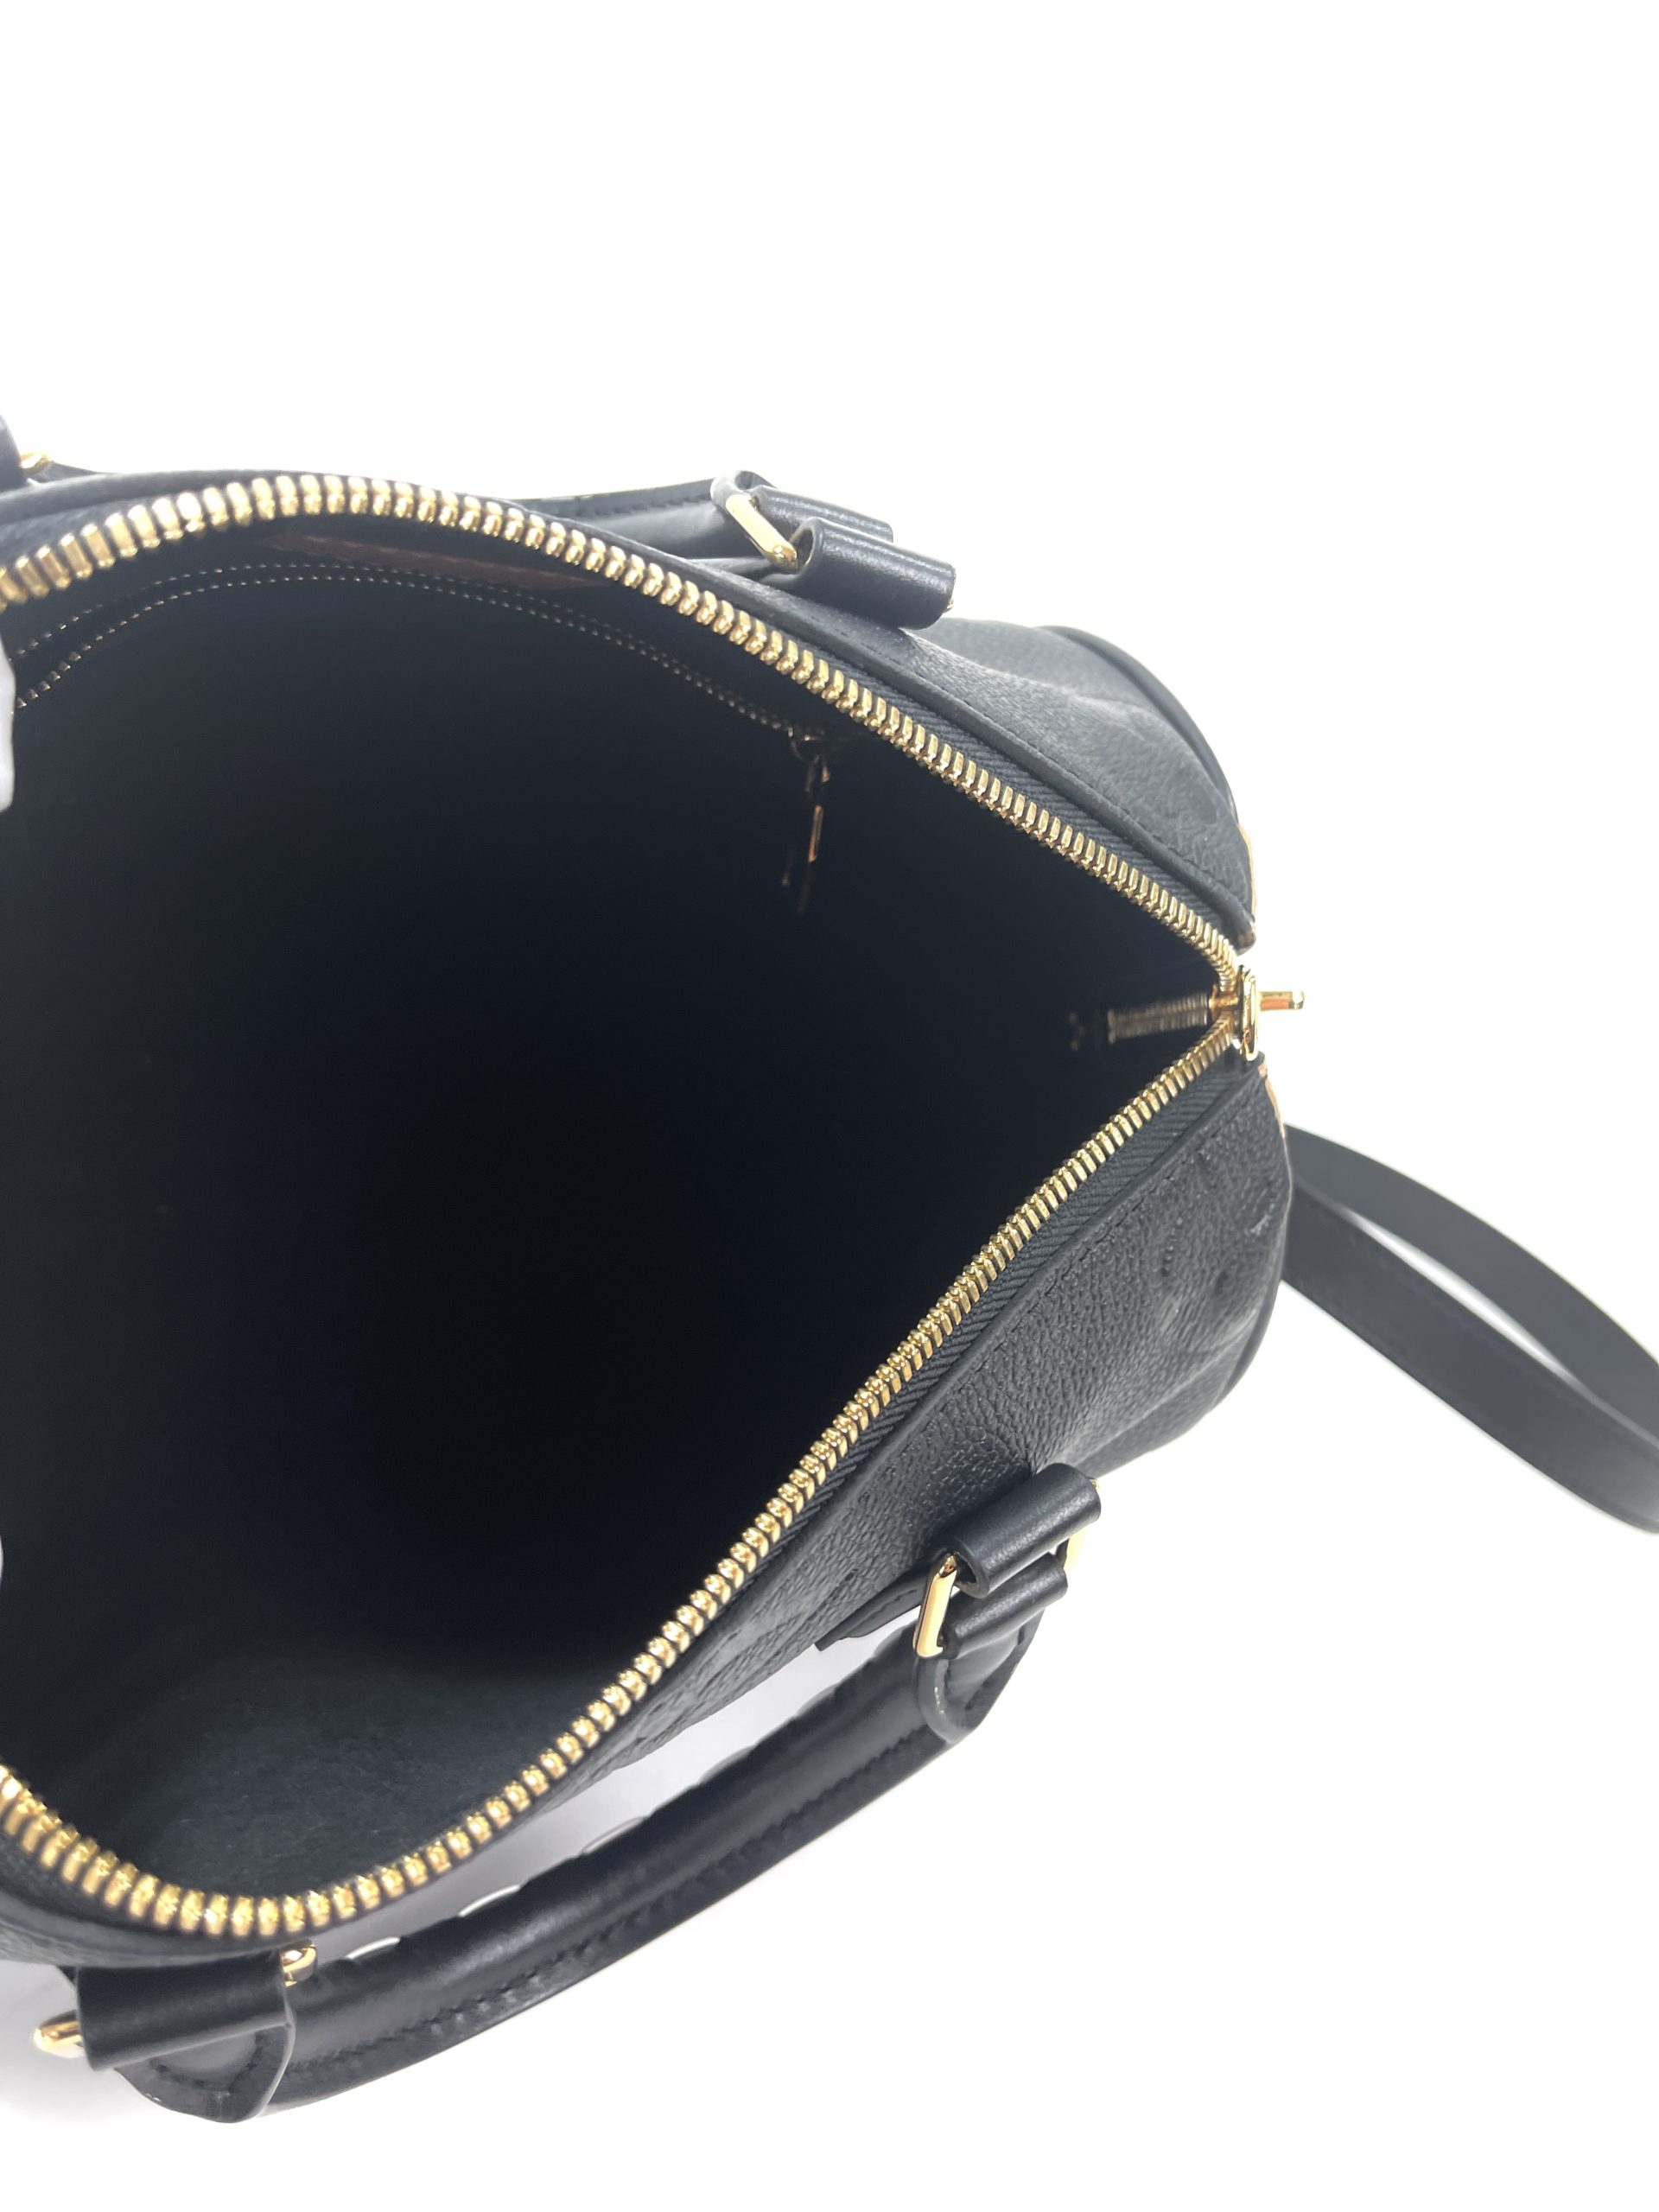 Louis Vuitton Speedy Bandouliere 25 Wild at Heart Black